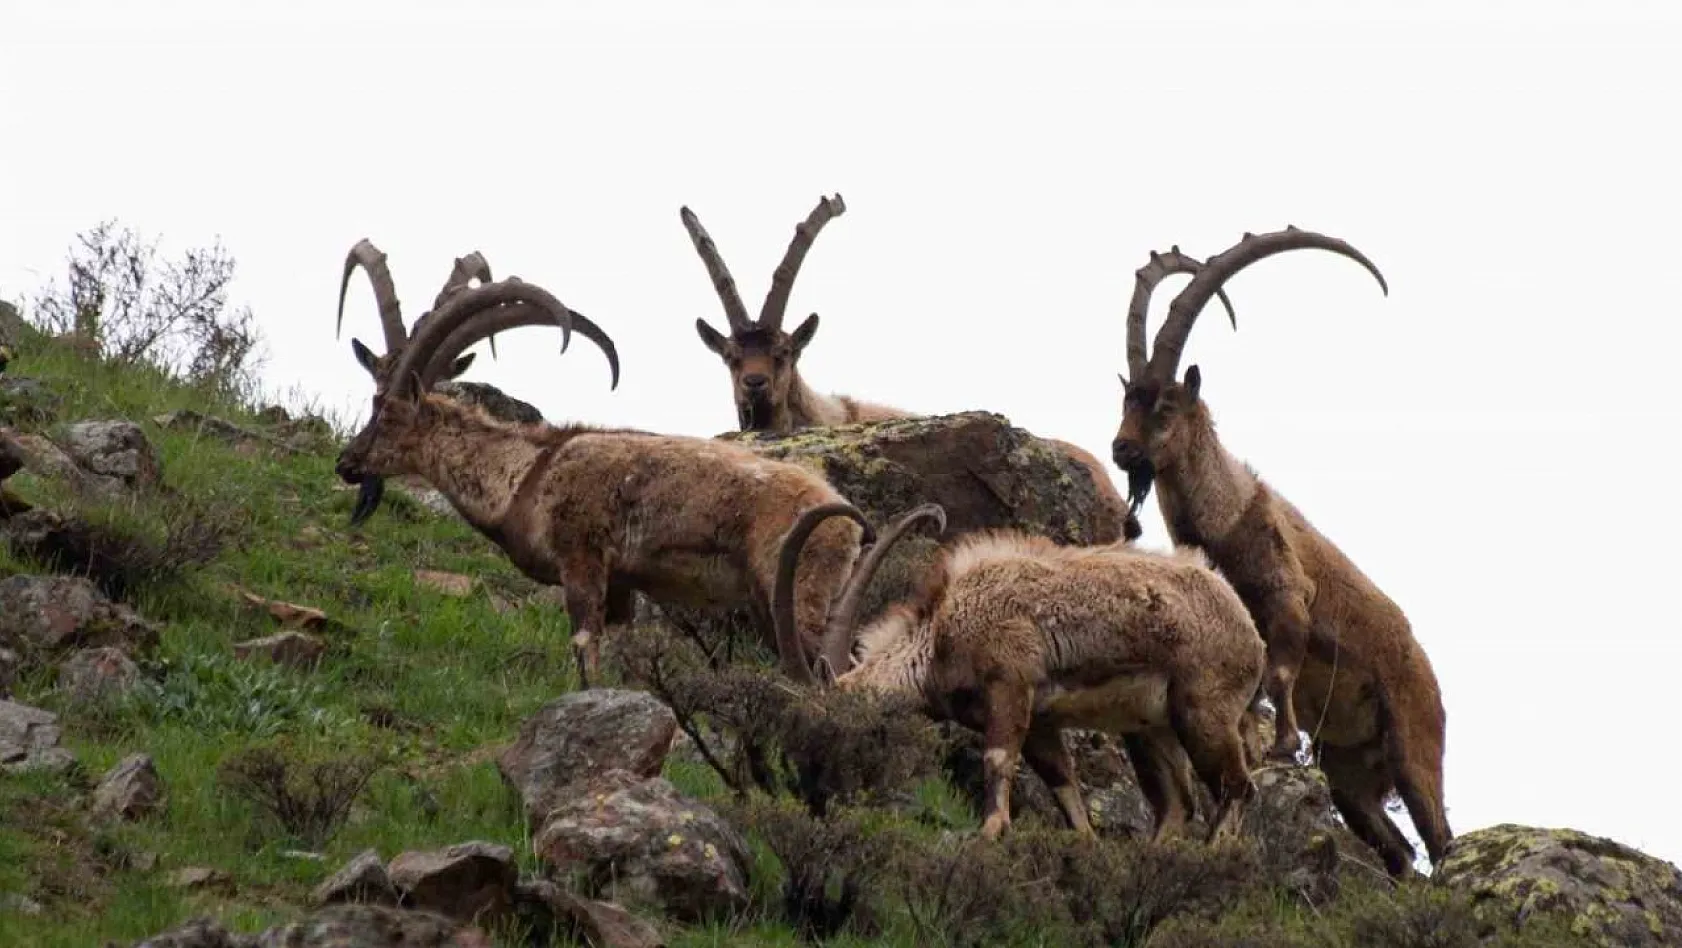 Tunceli'de boz ayı ailesi ve yaban keçileri görüntülendi